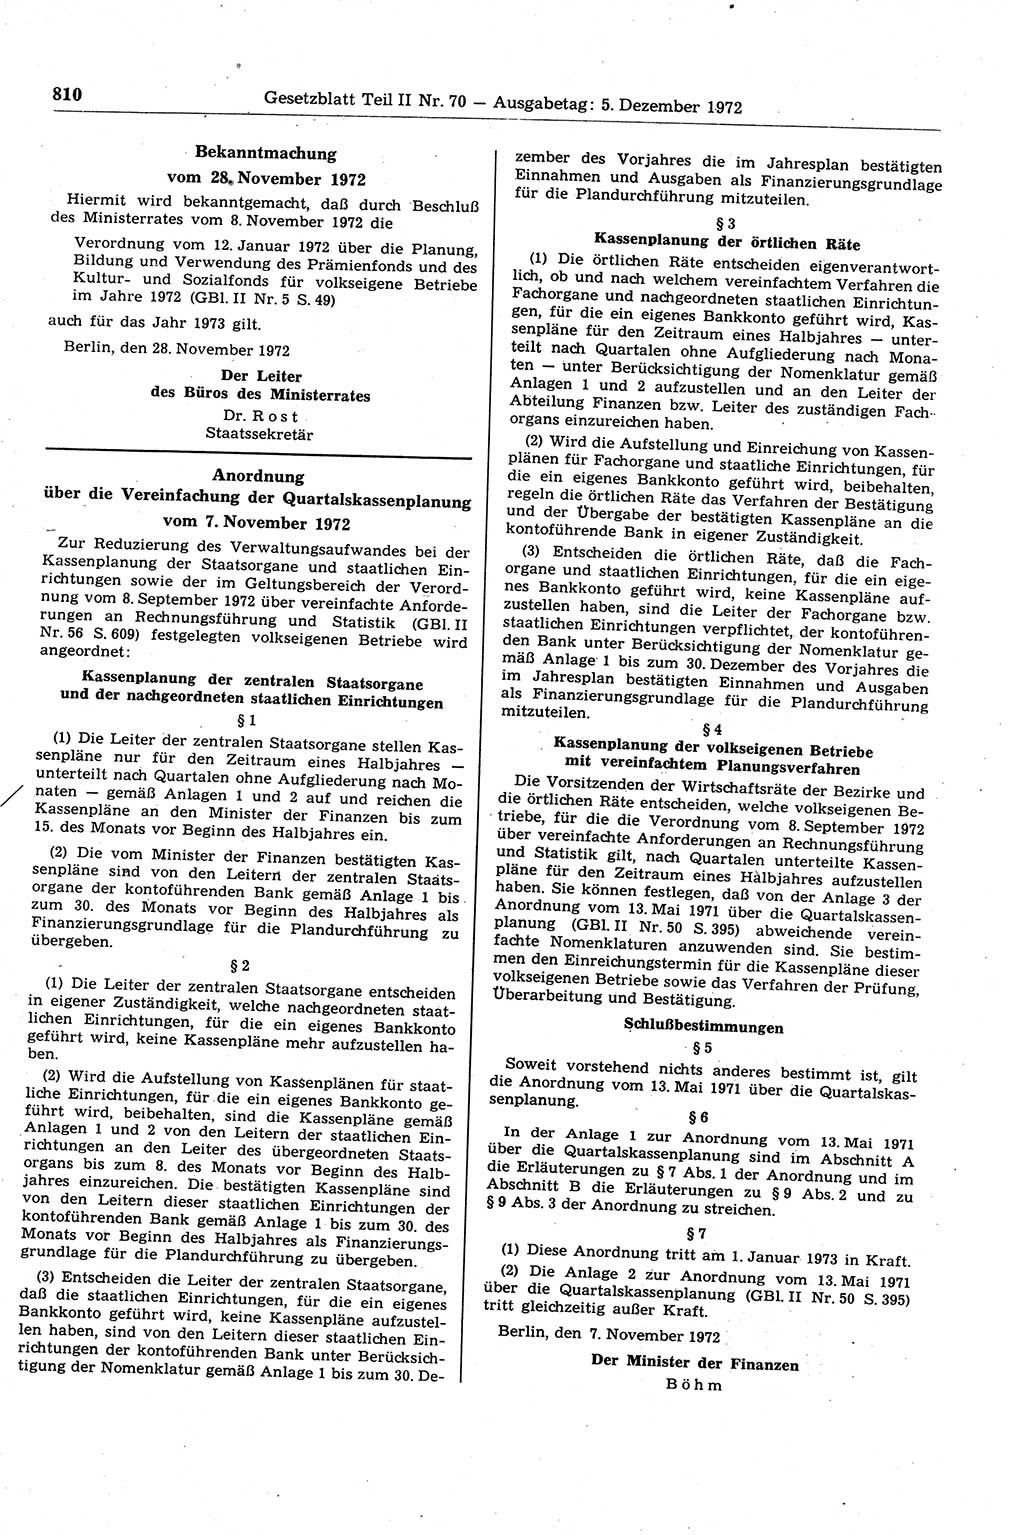 Gesetzblatt (GBl.) der Deutschen Demokratischen Republik (DDR) Teil ⅠⅠ 1972, Seite 810 (GBl. DDR ⅠⅠ 1972, S. 810)